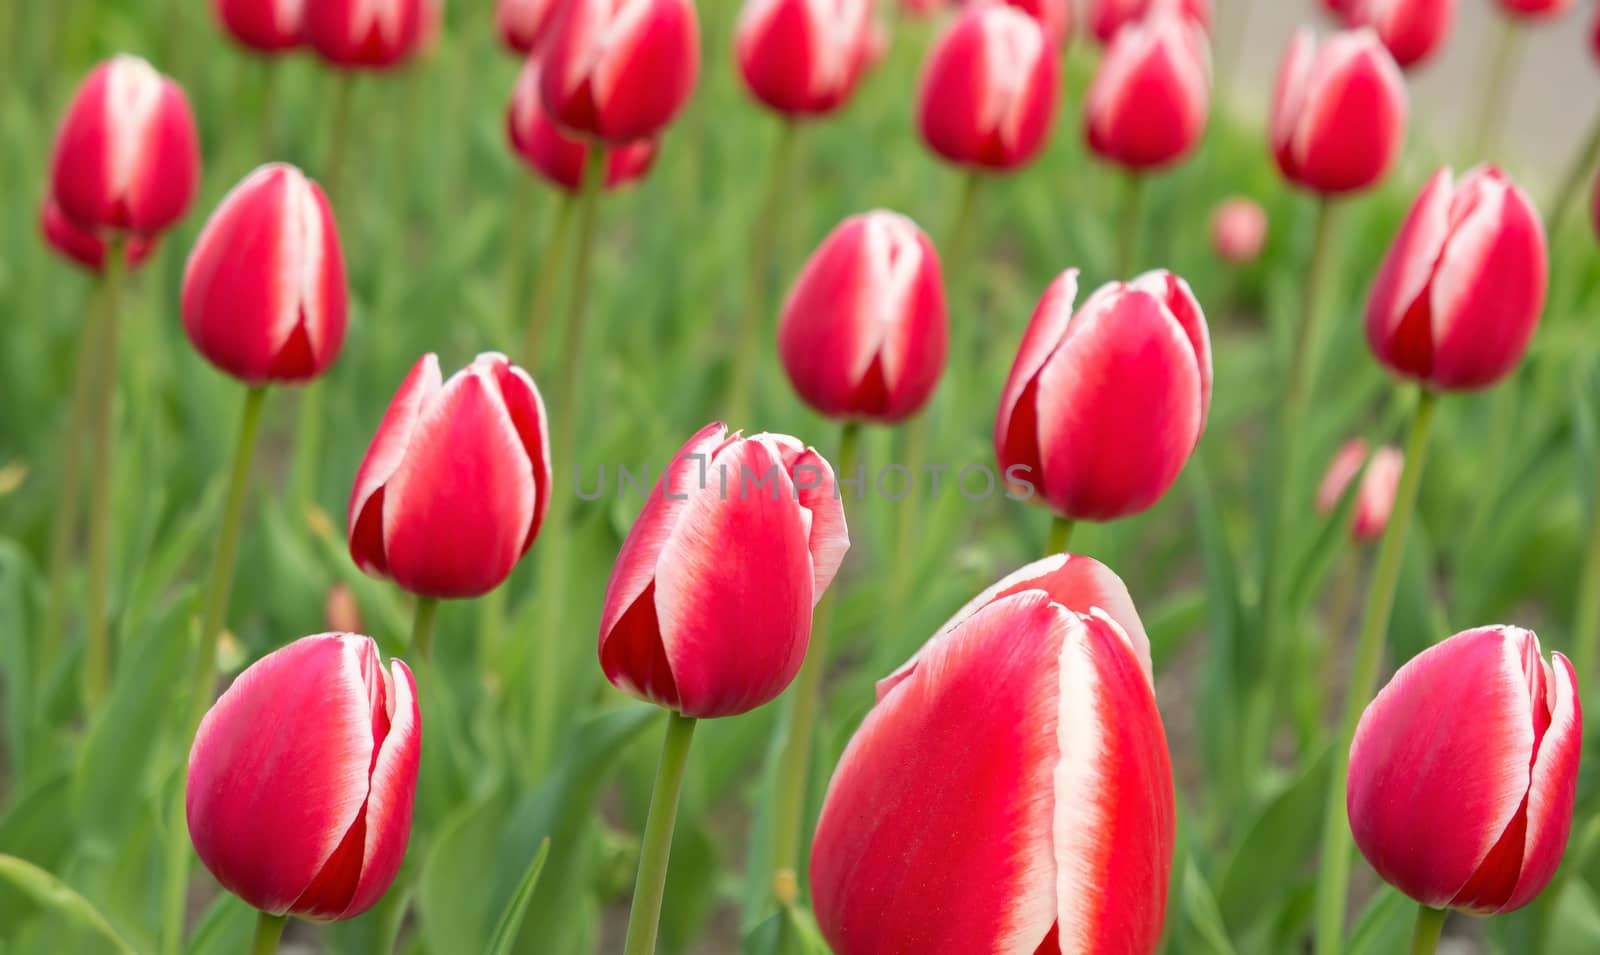 Tulips red-white by Venakr